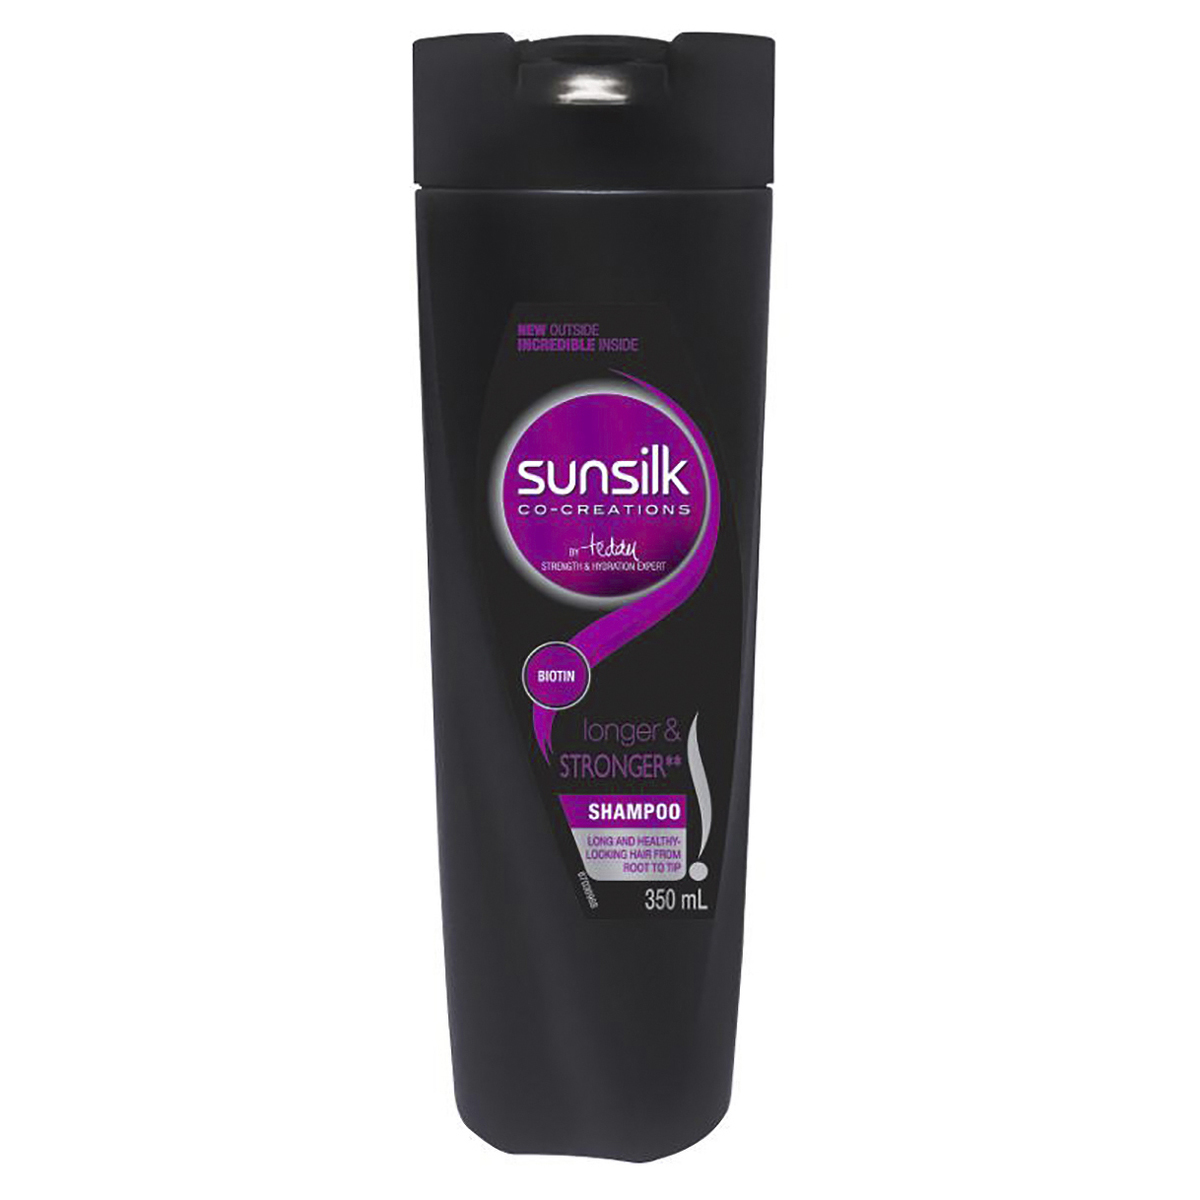 Sunsilk 350ml Longer & Stronger Shampoo